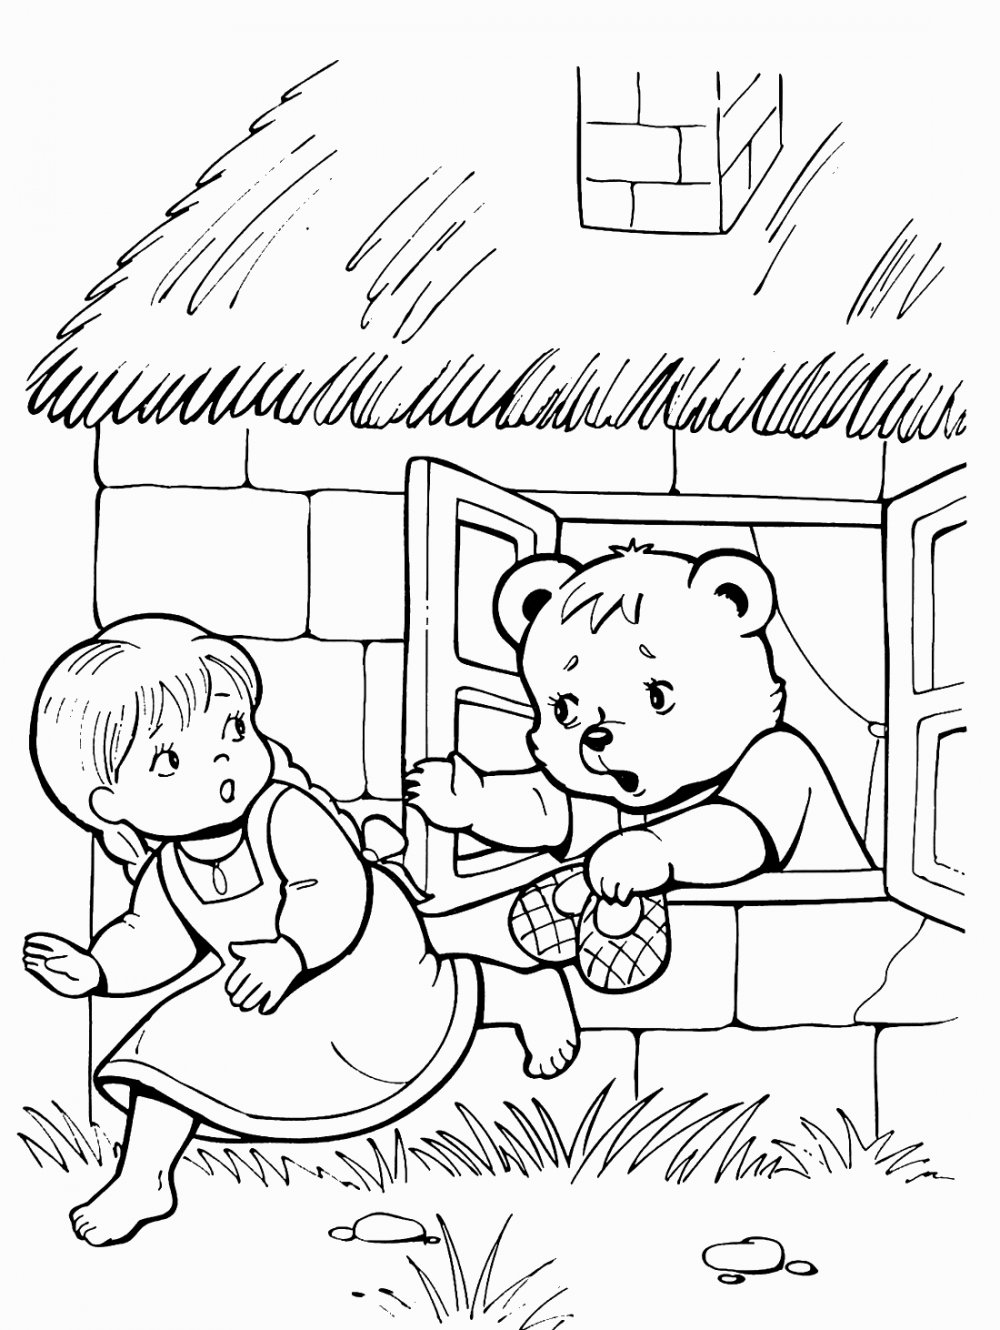 Иллюстрация к сказке три медведя раскраска